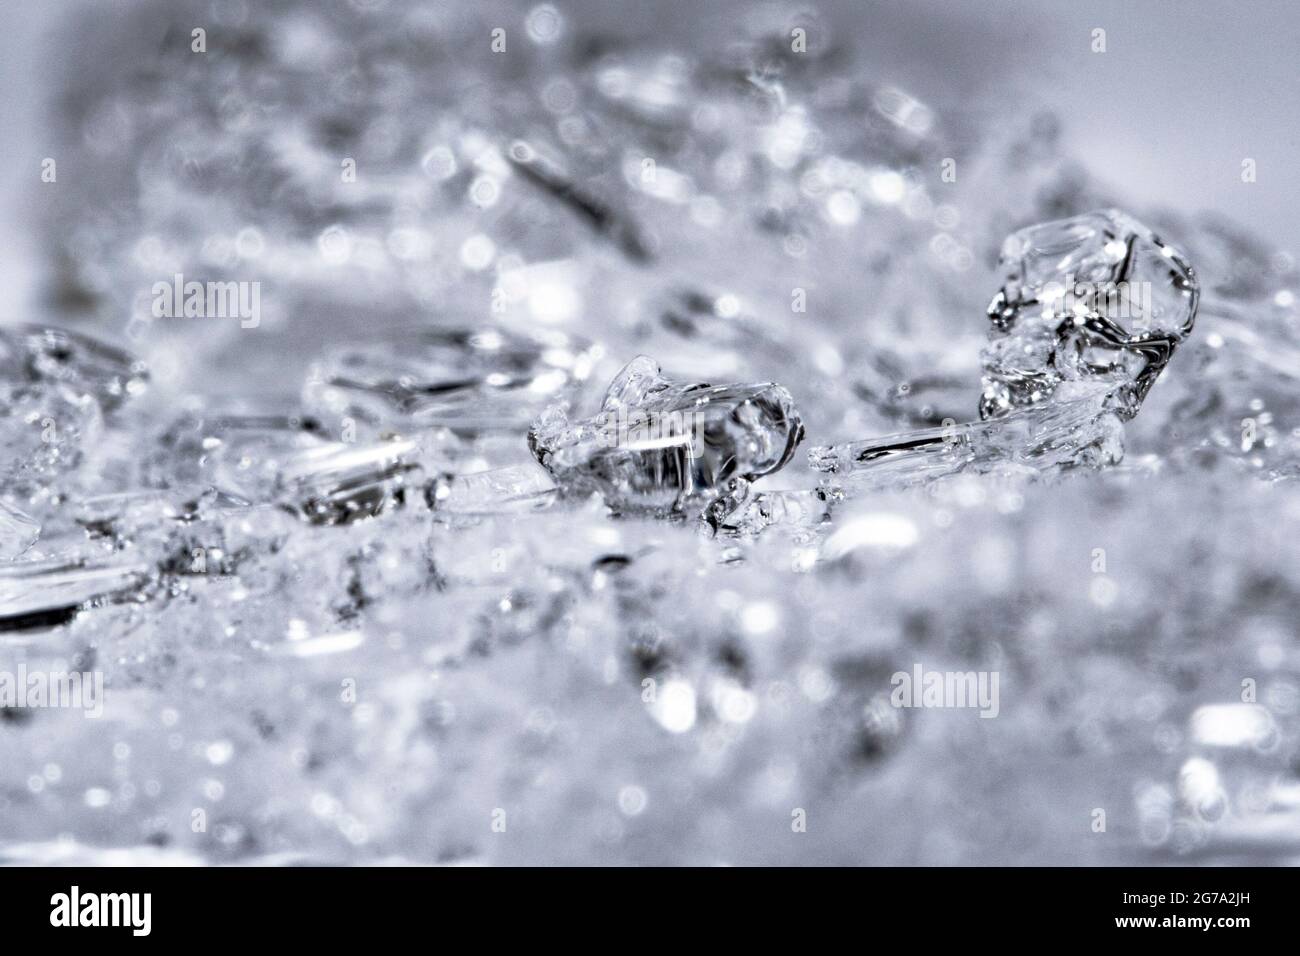 Magnifique fond de cristaux de glace Banque D'Images